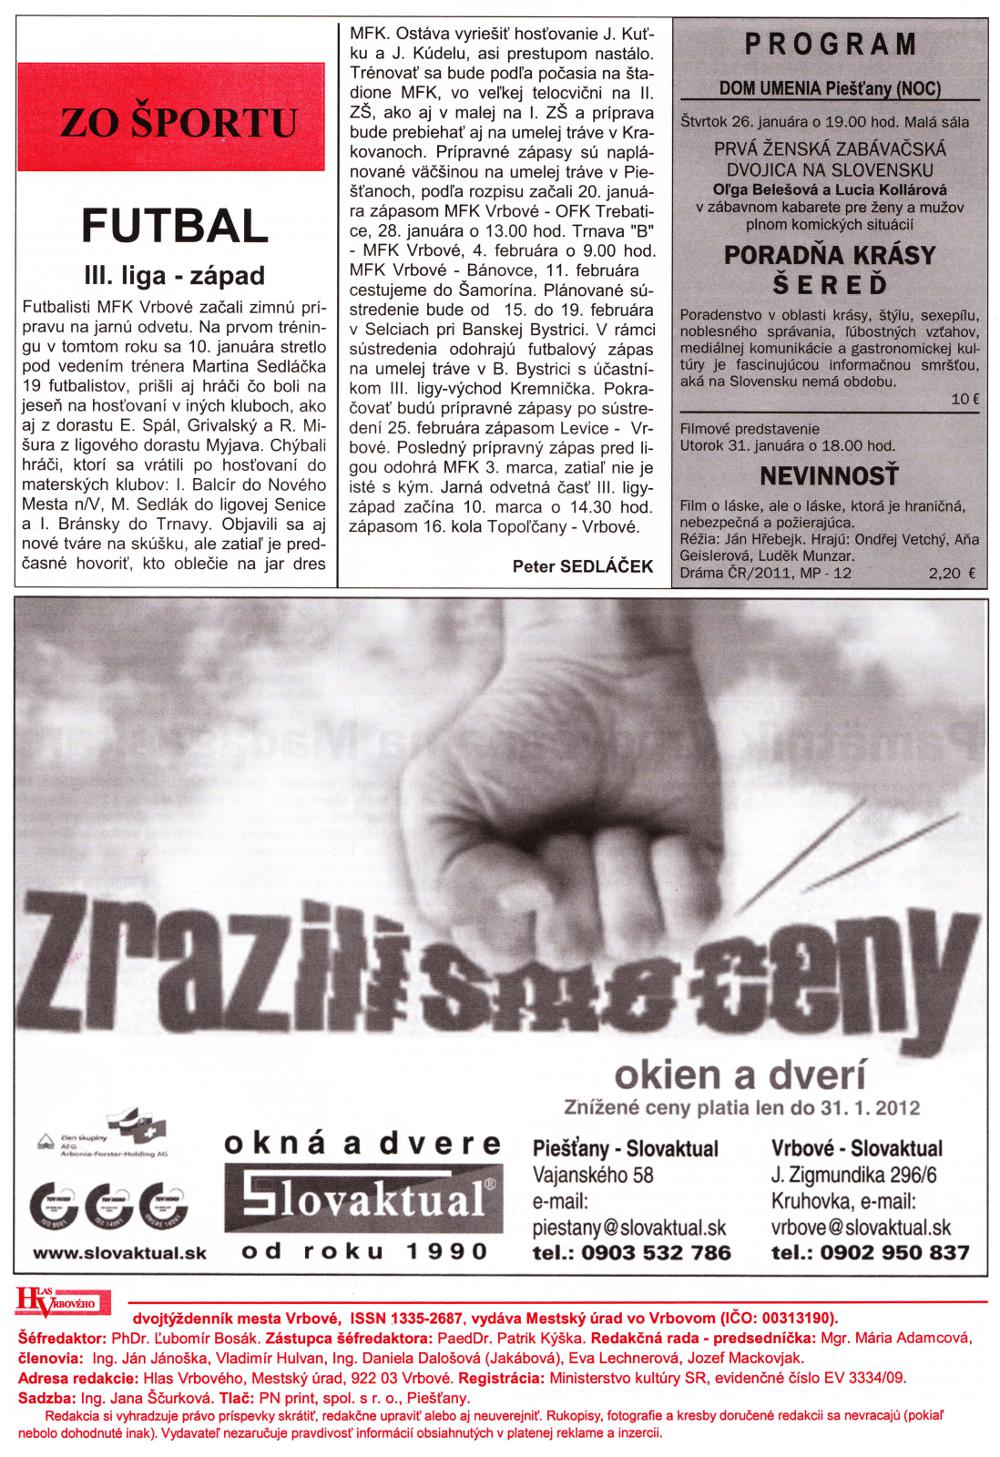 Hlas Vrbového 02/2012, strana 8